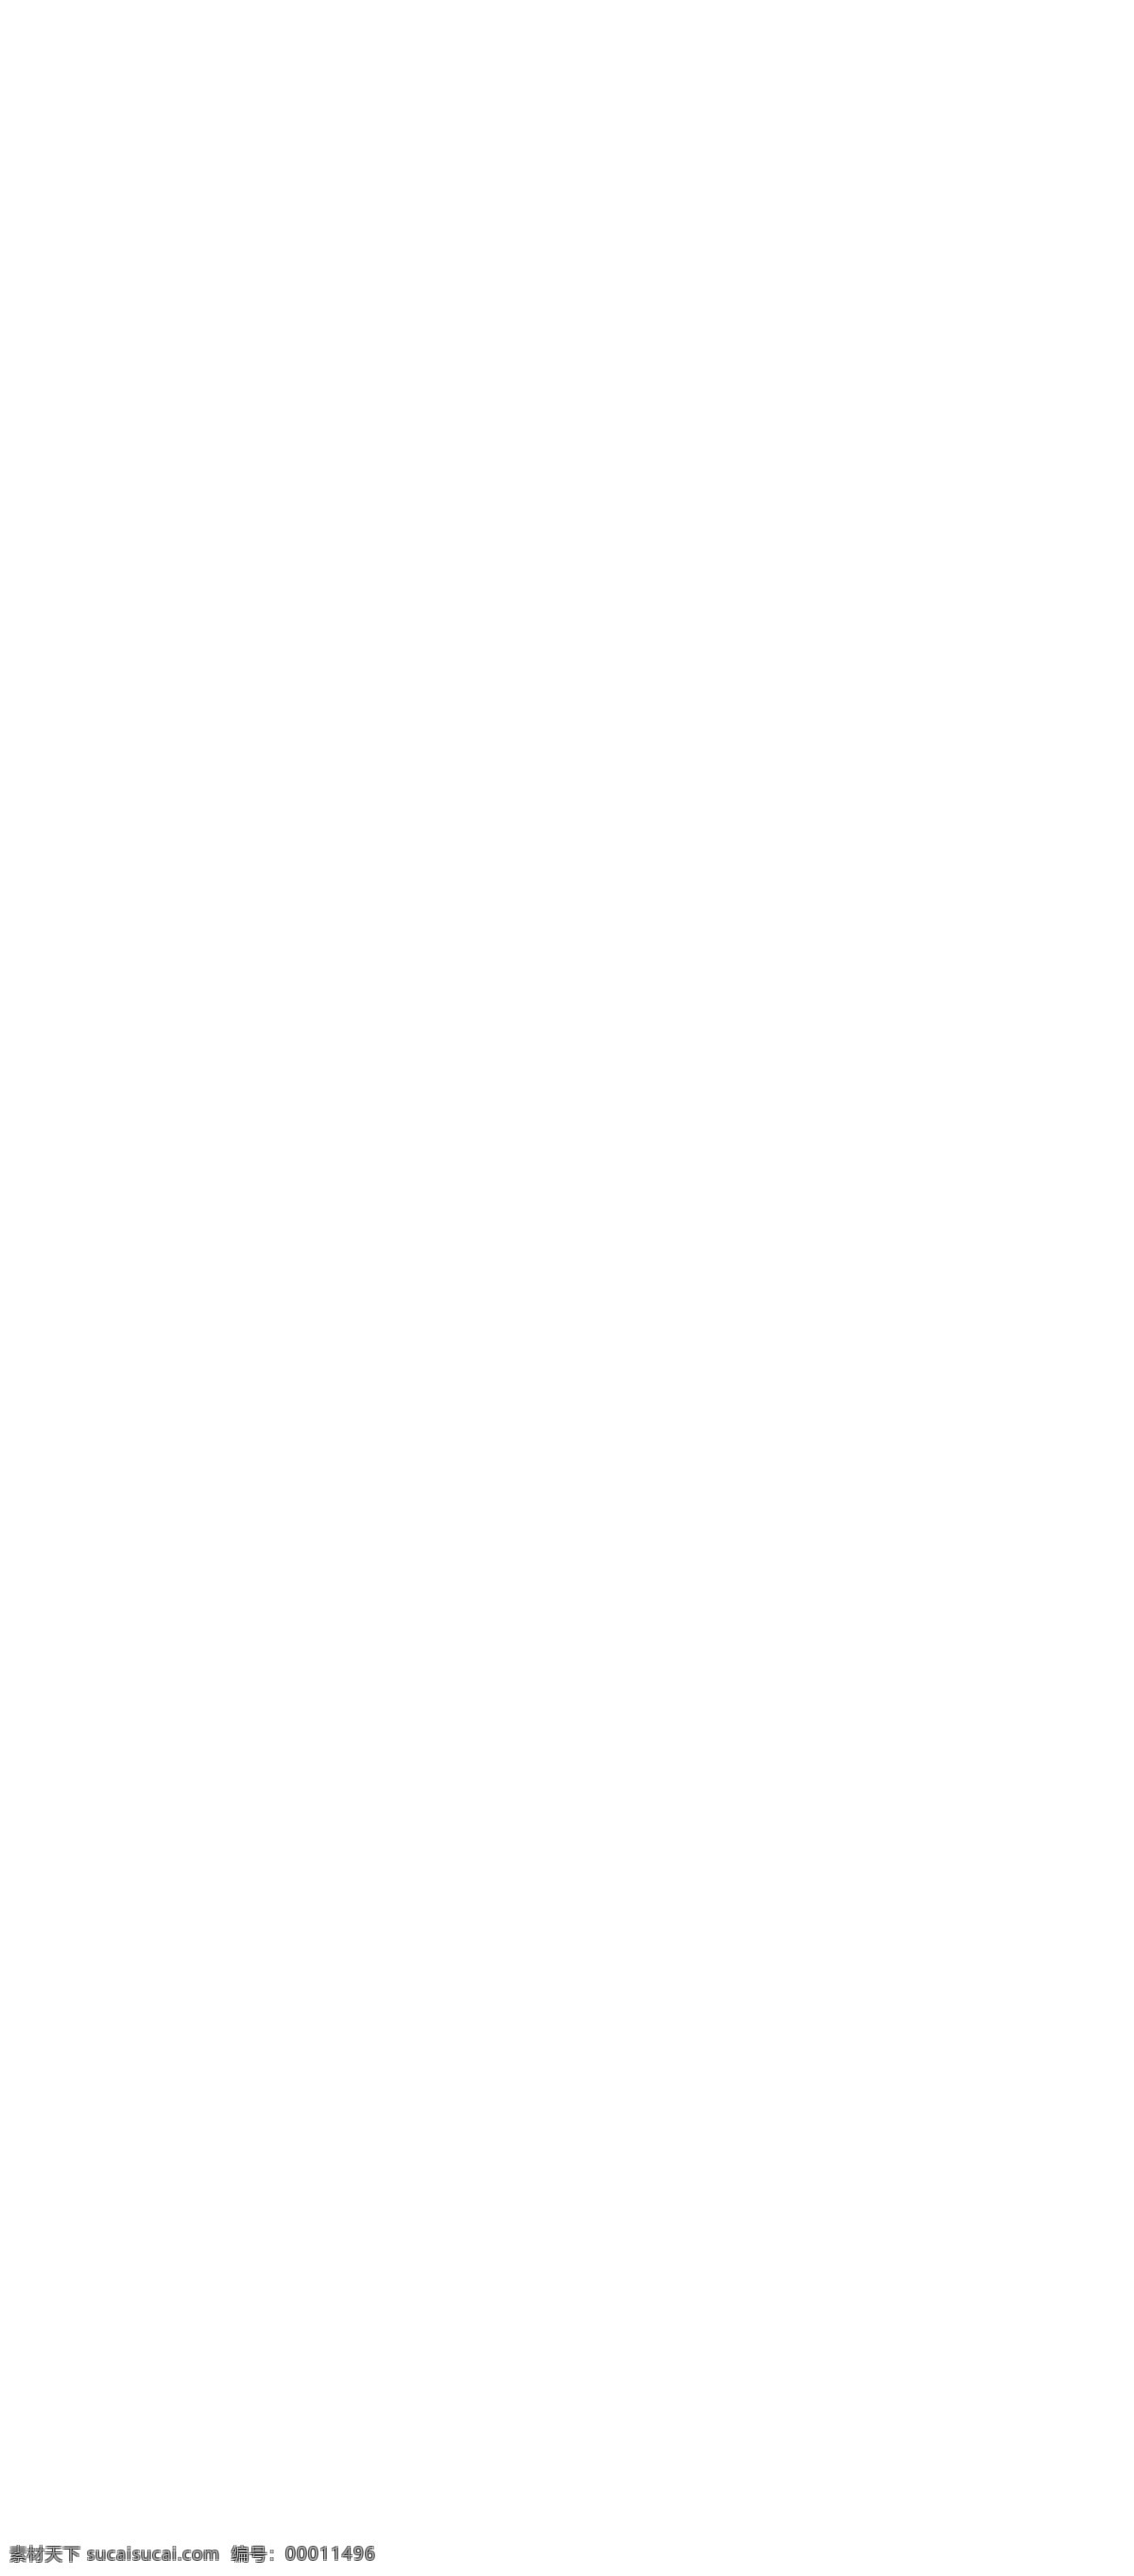 中秋 国庆 活动 展架 中秋节 国庆节 海报 地暖 水处理 智能家居 双节来袭 一惠到底 sale 月亮 云彩 礼盒 展板模板 广告设计模板 源文件